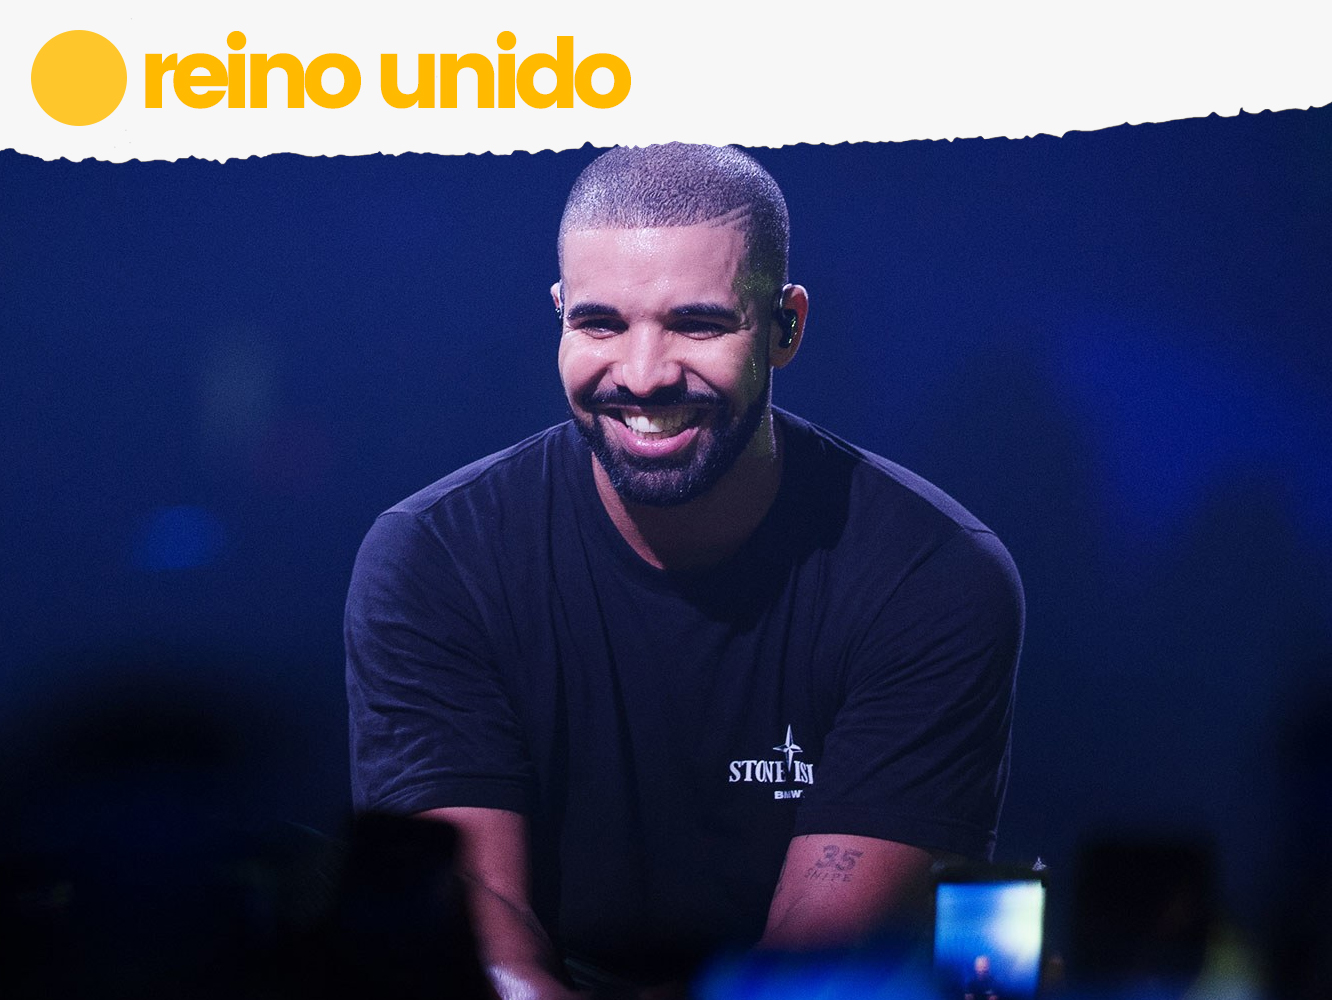  UK | La viralidad de ‘In My Feelings’ lleva a Drake a su tercer doblete británico